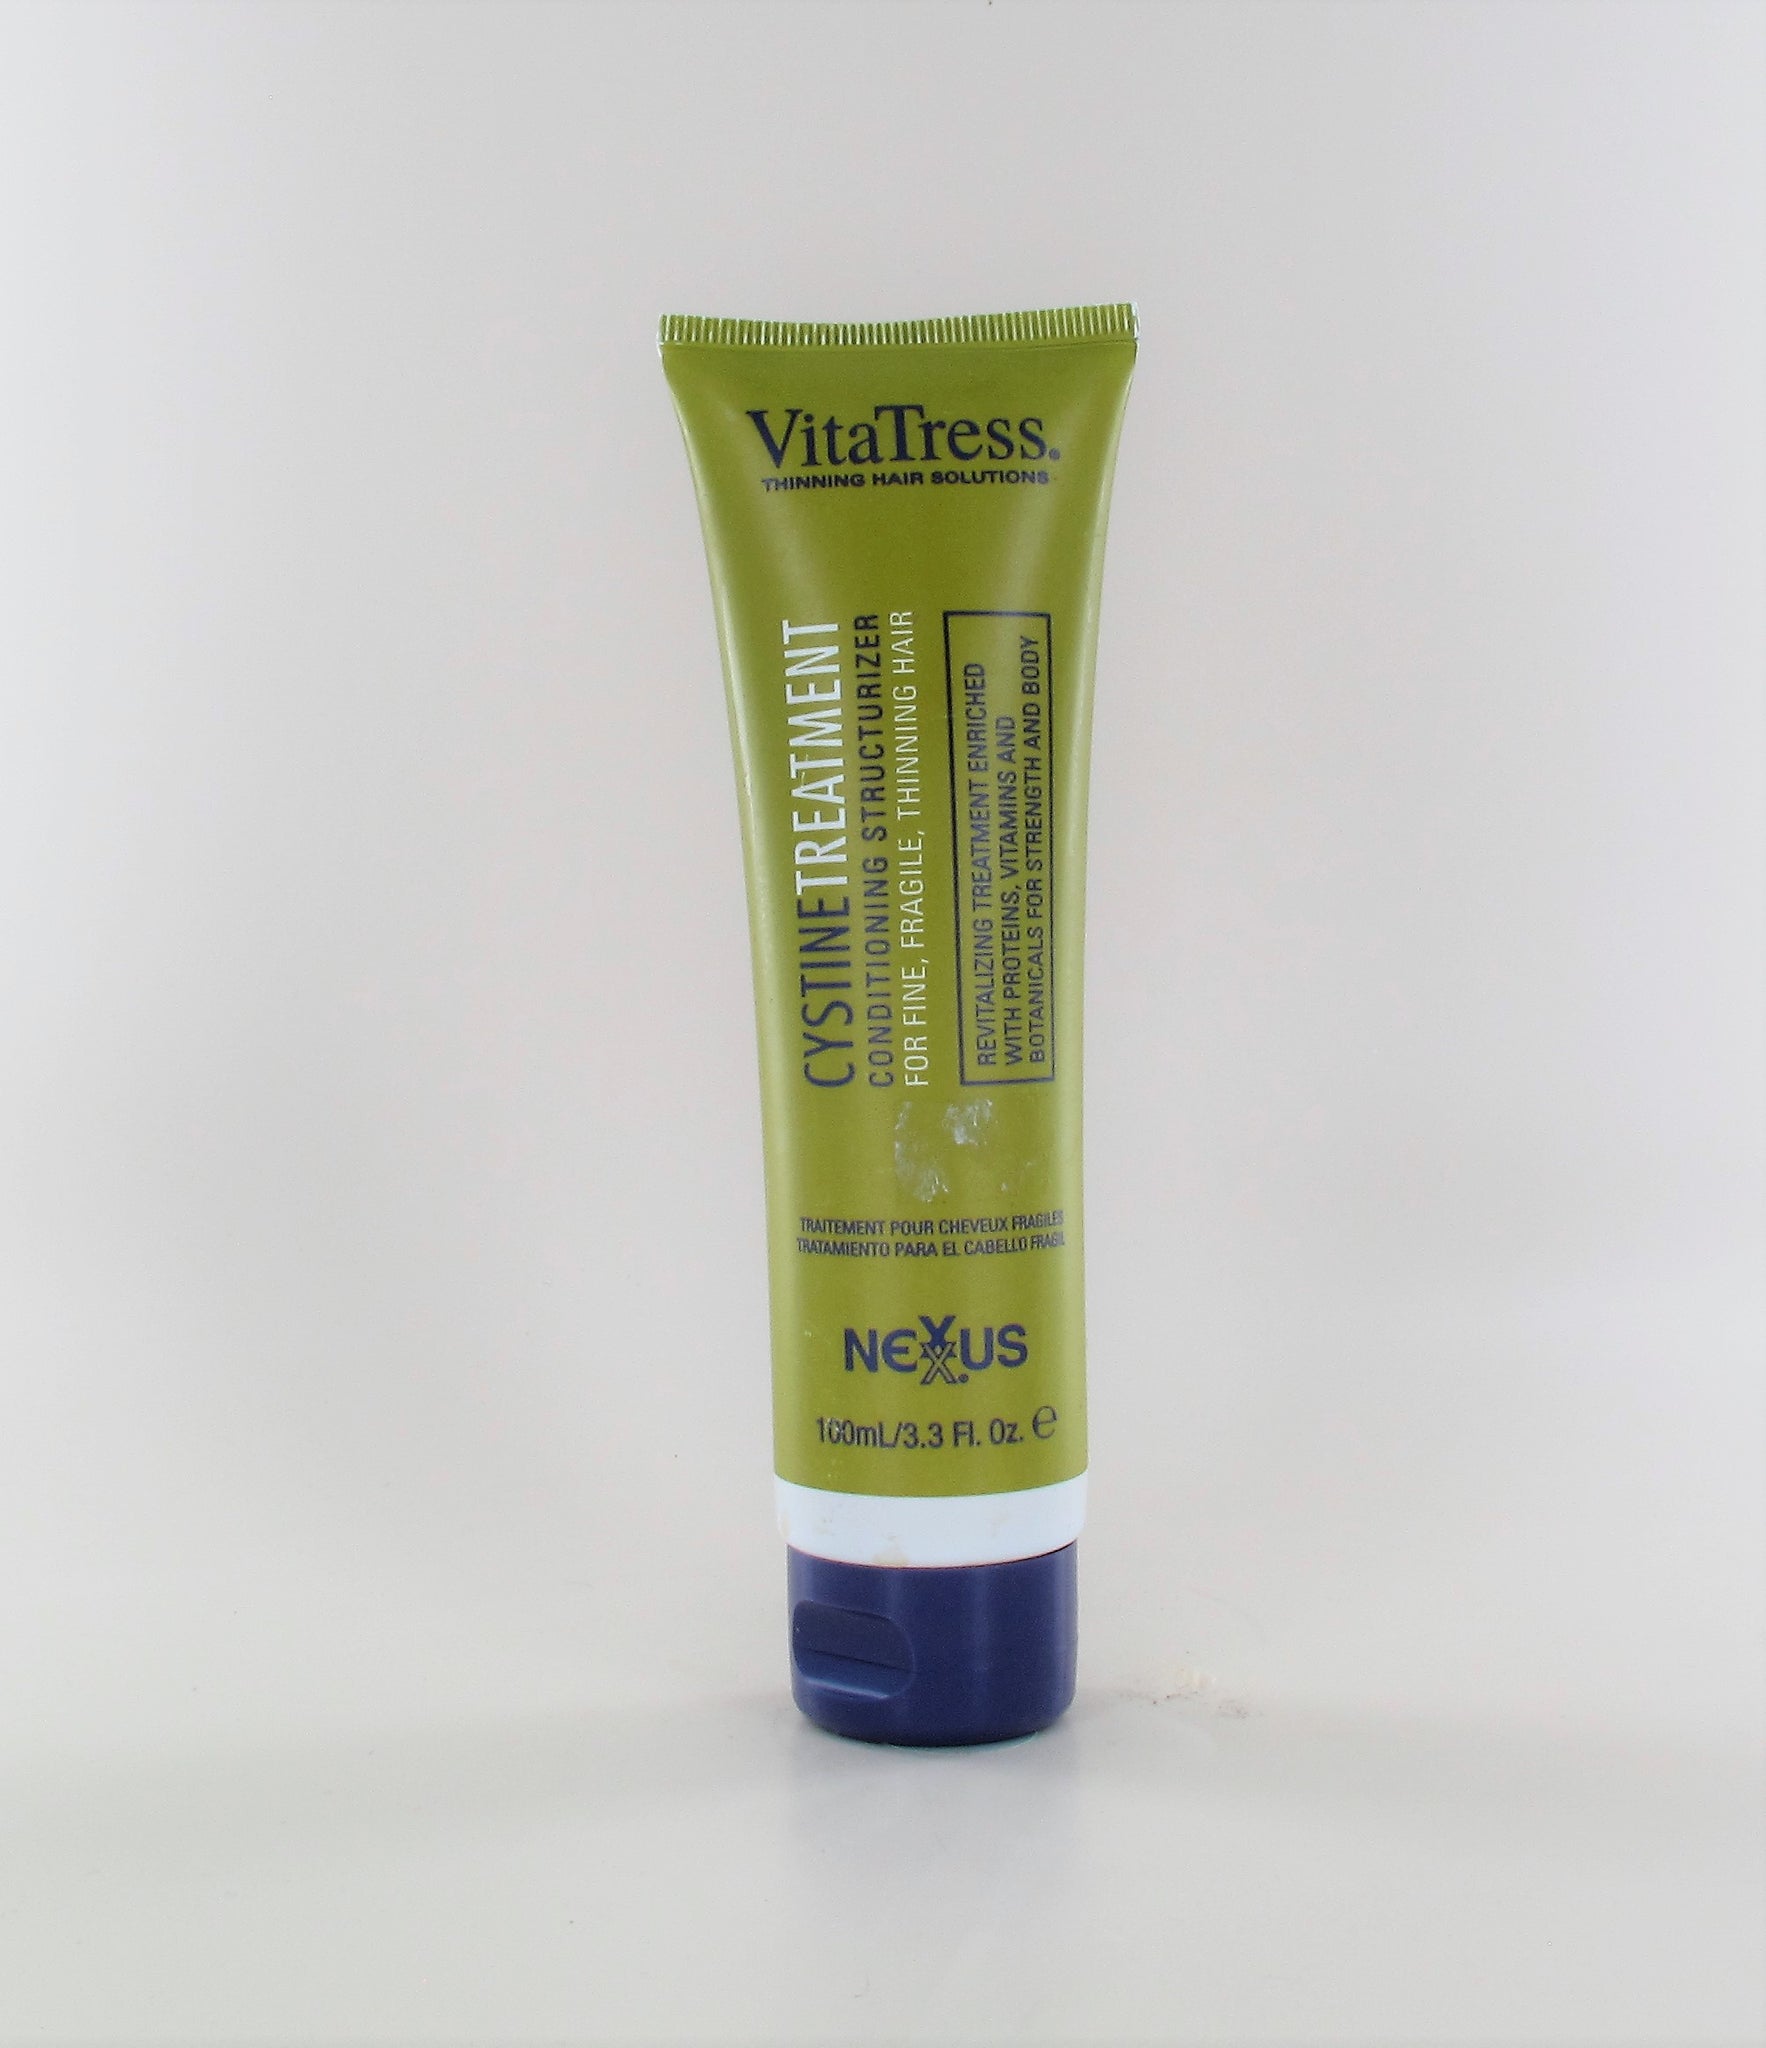 NEXXUS VitaTress Cystine Treatment Conditioning Structurizer 3.3 oz